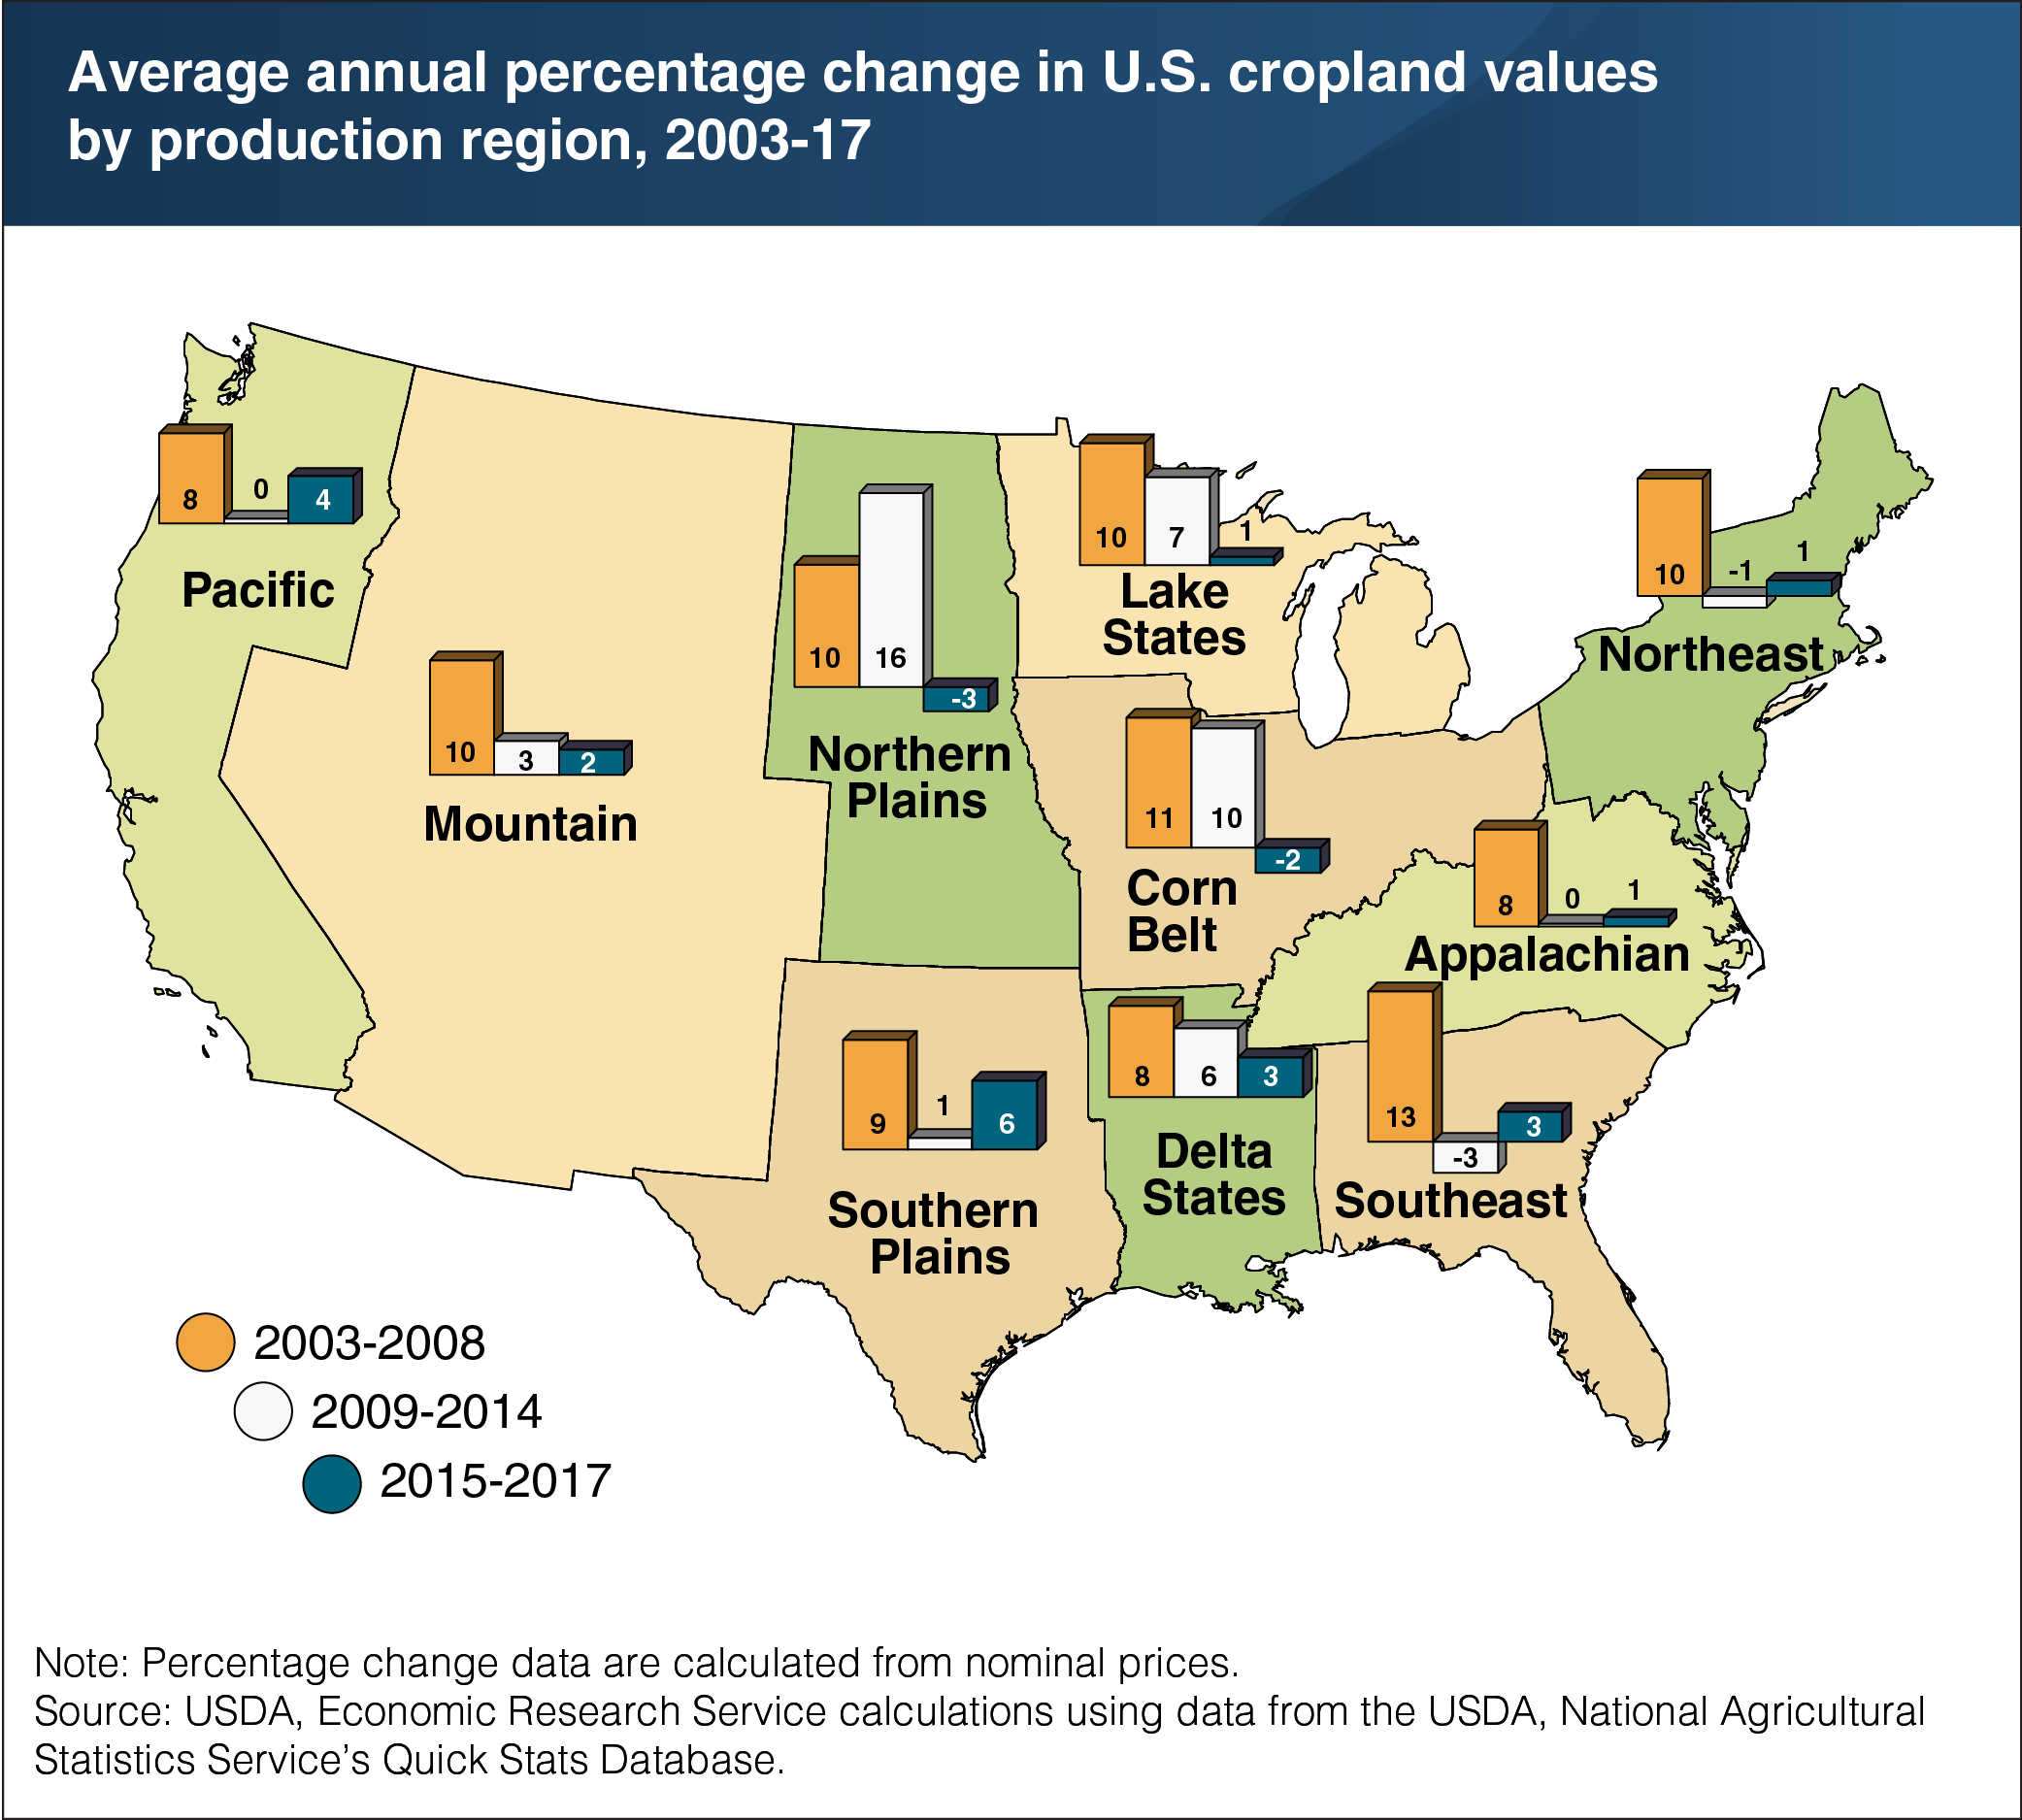 https://www.ers.usda.gov/webdocs/charts/88326/average_annual_percentage_change_us_cropland_values_03-17-01.png?v=43201